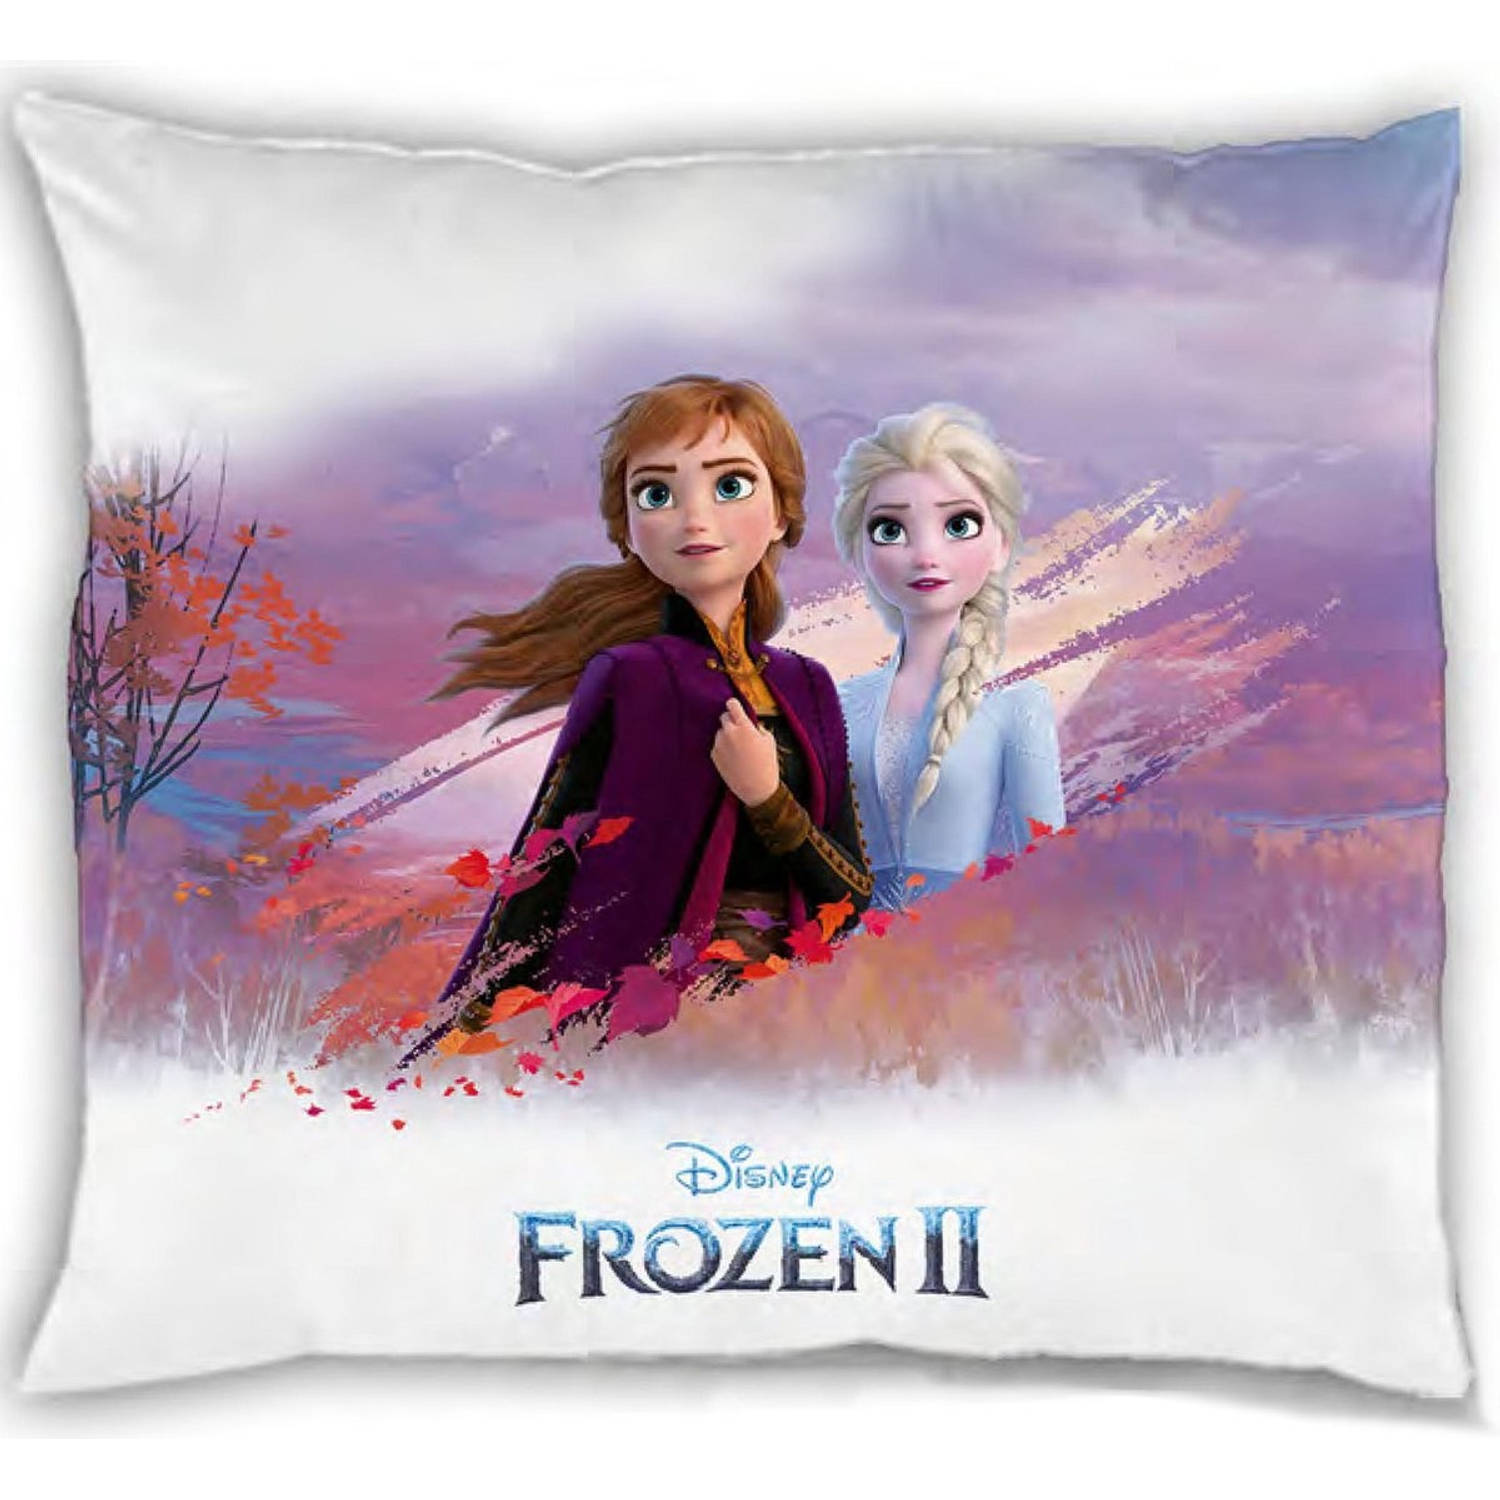 Disney Frozen V2 - kussen 35 x 35 cm Elsa en Anna - Frozen 2 Disney kussen - Frozen kussen - Frozen Disney.